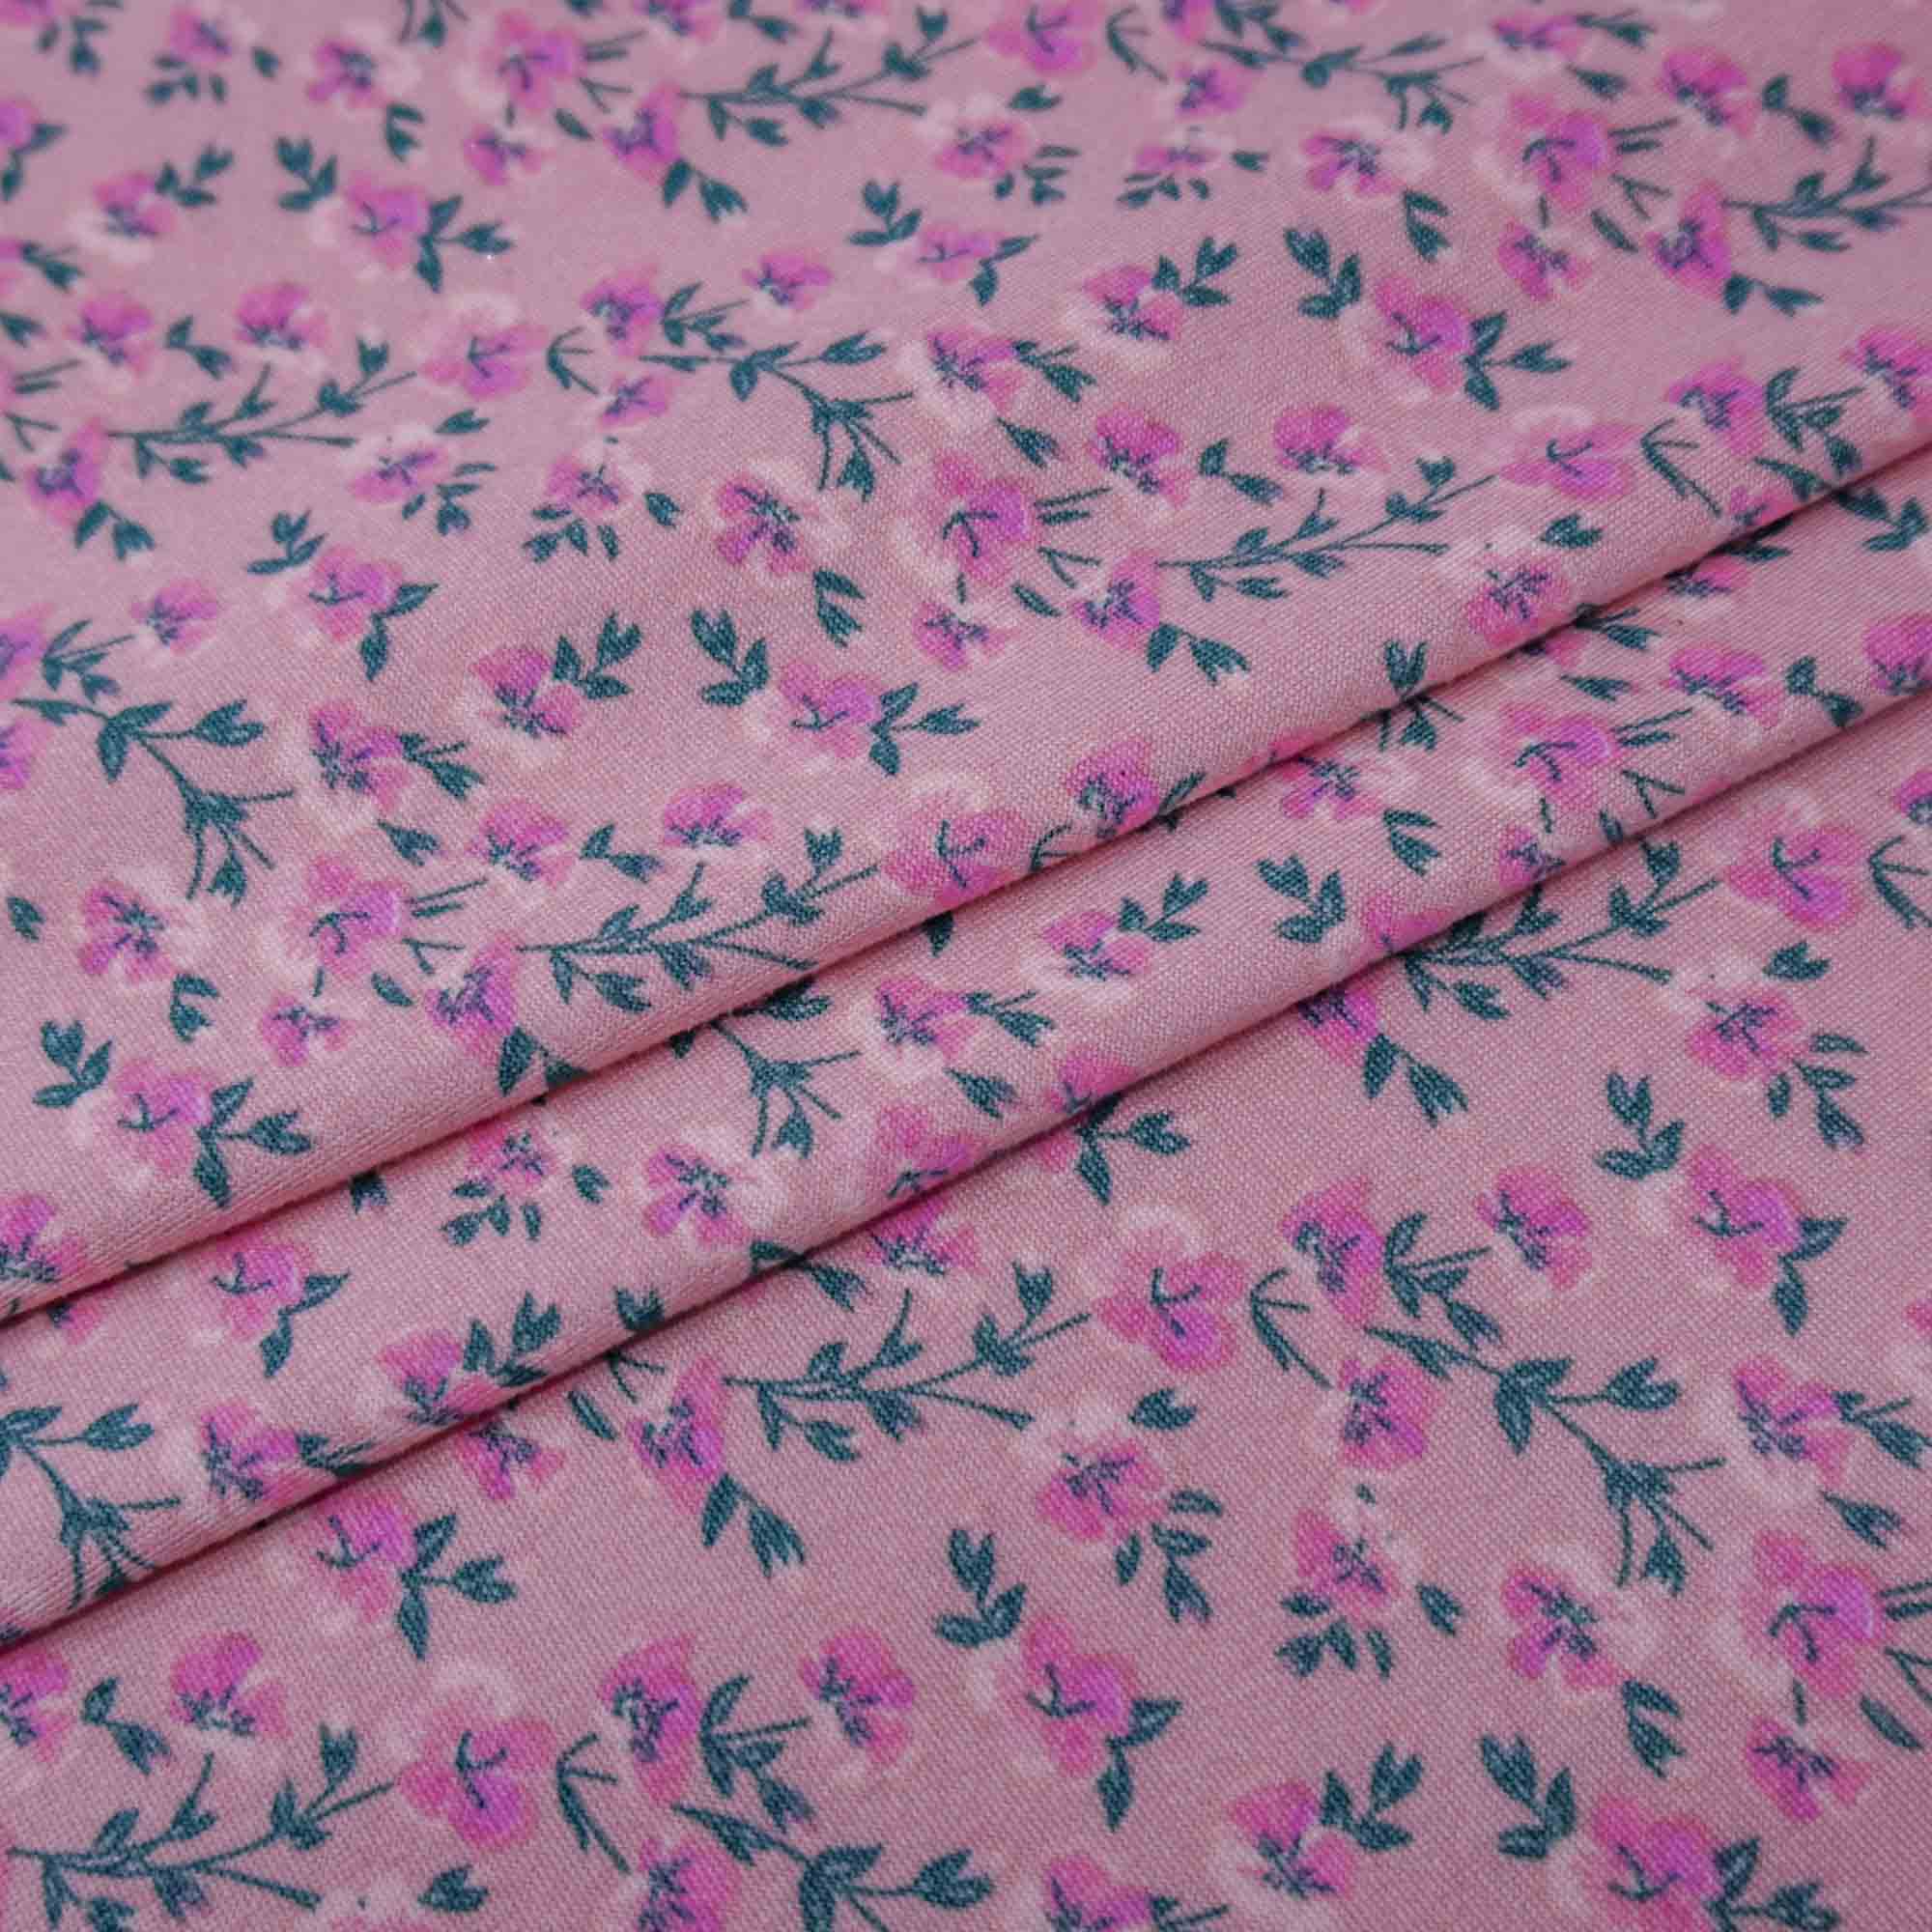 Tecido malha viscolycra suede estampado floral rosê